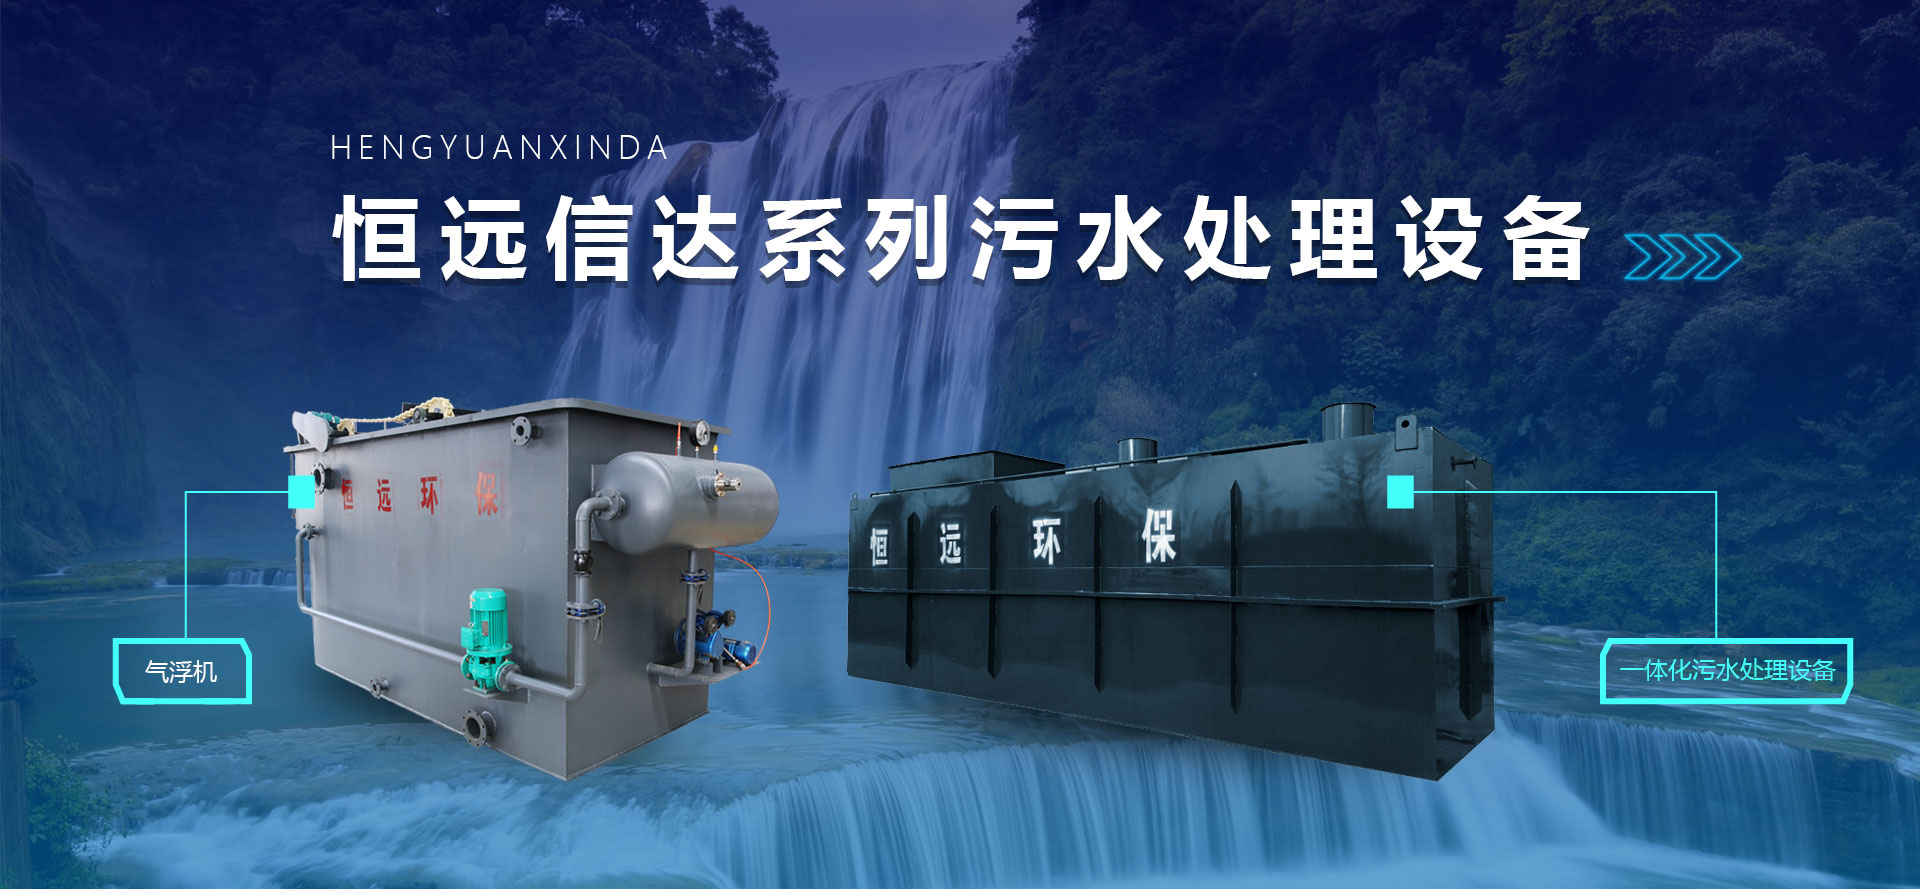 潍坊和记娱乐官网
环保水处理设备有限公司